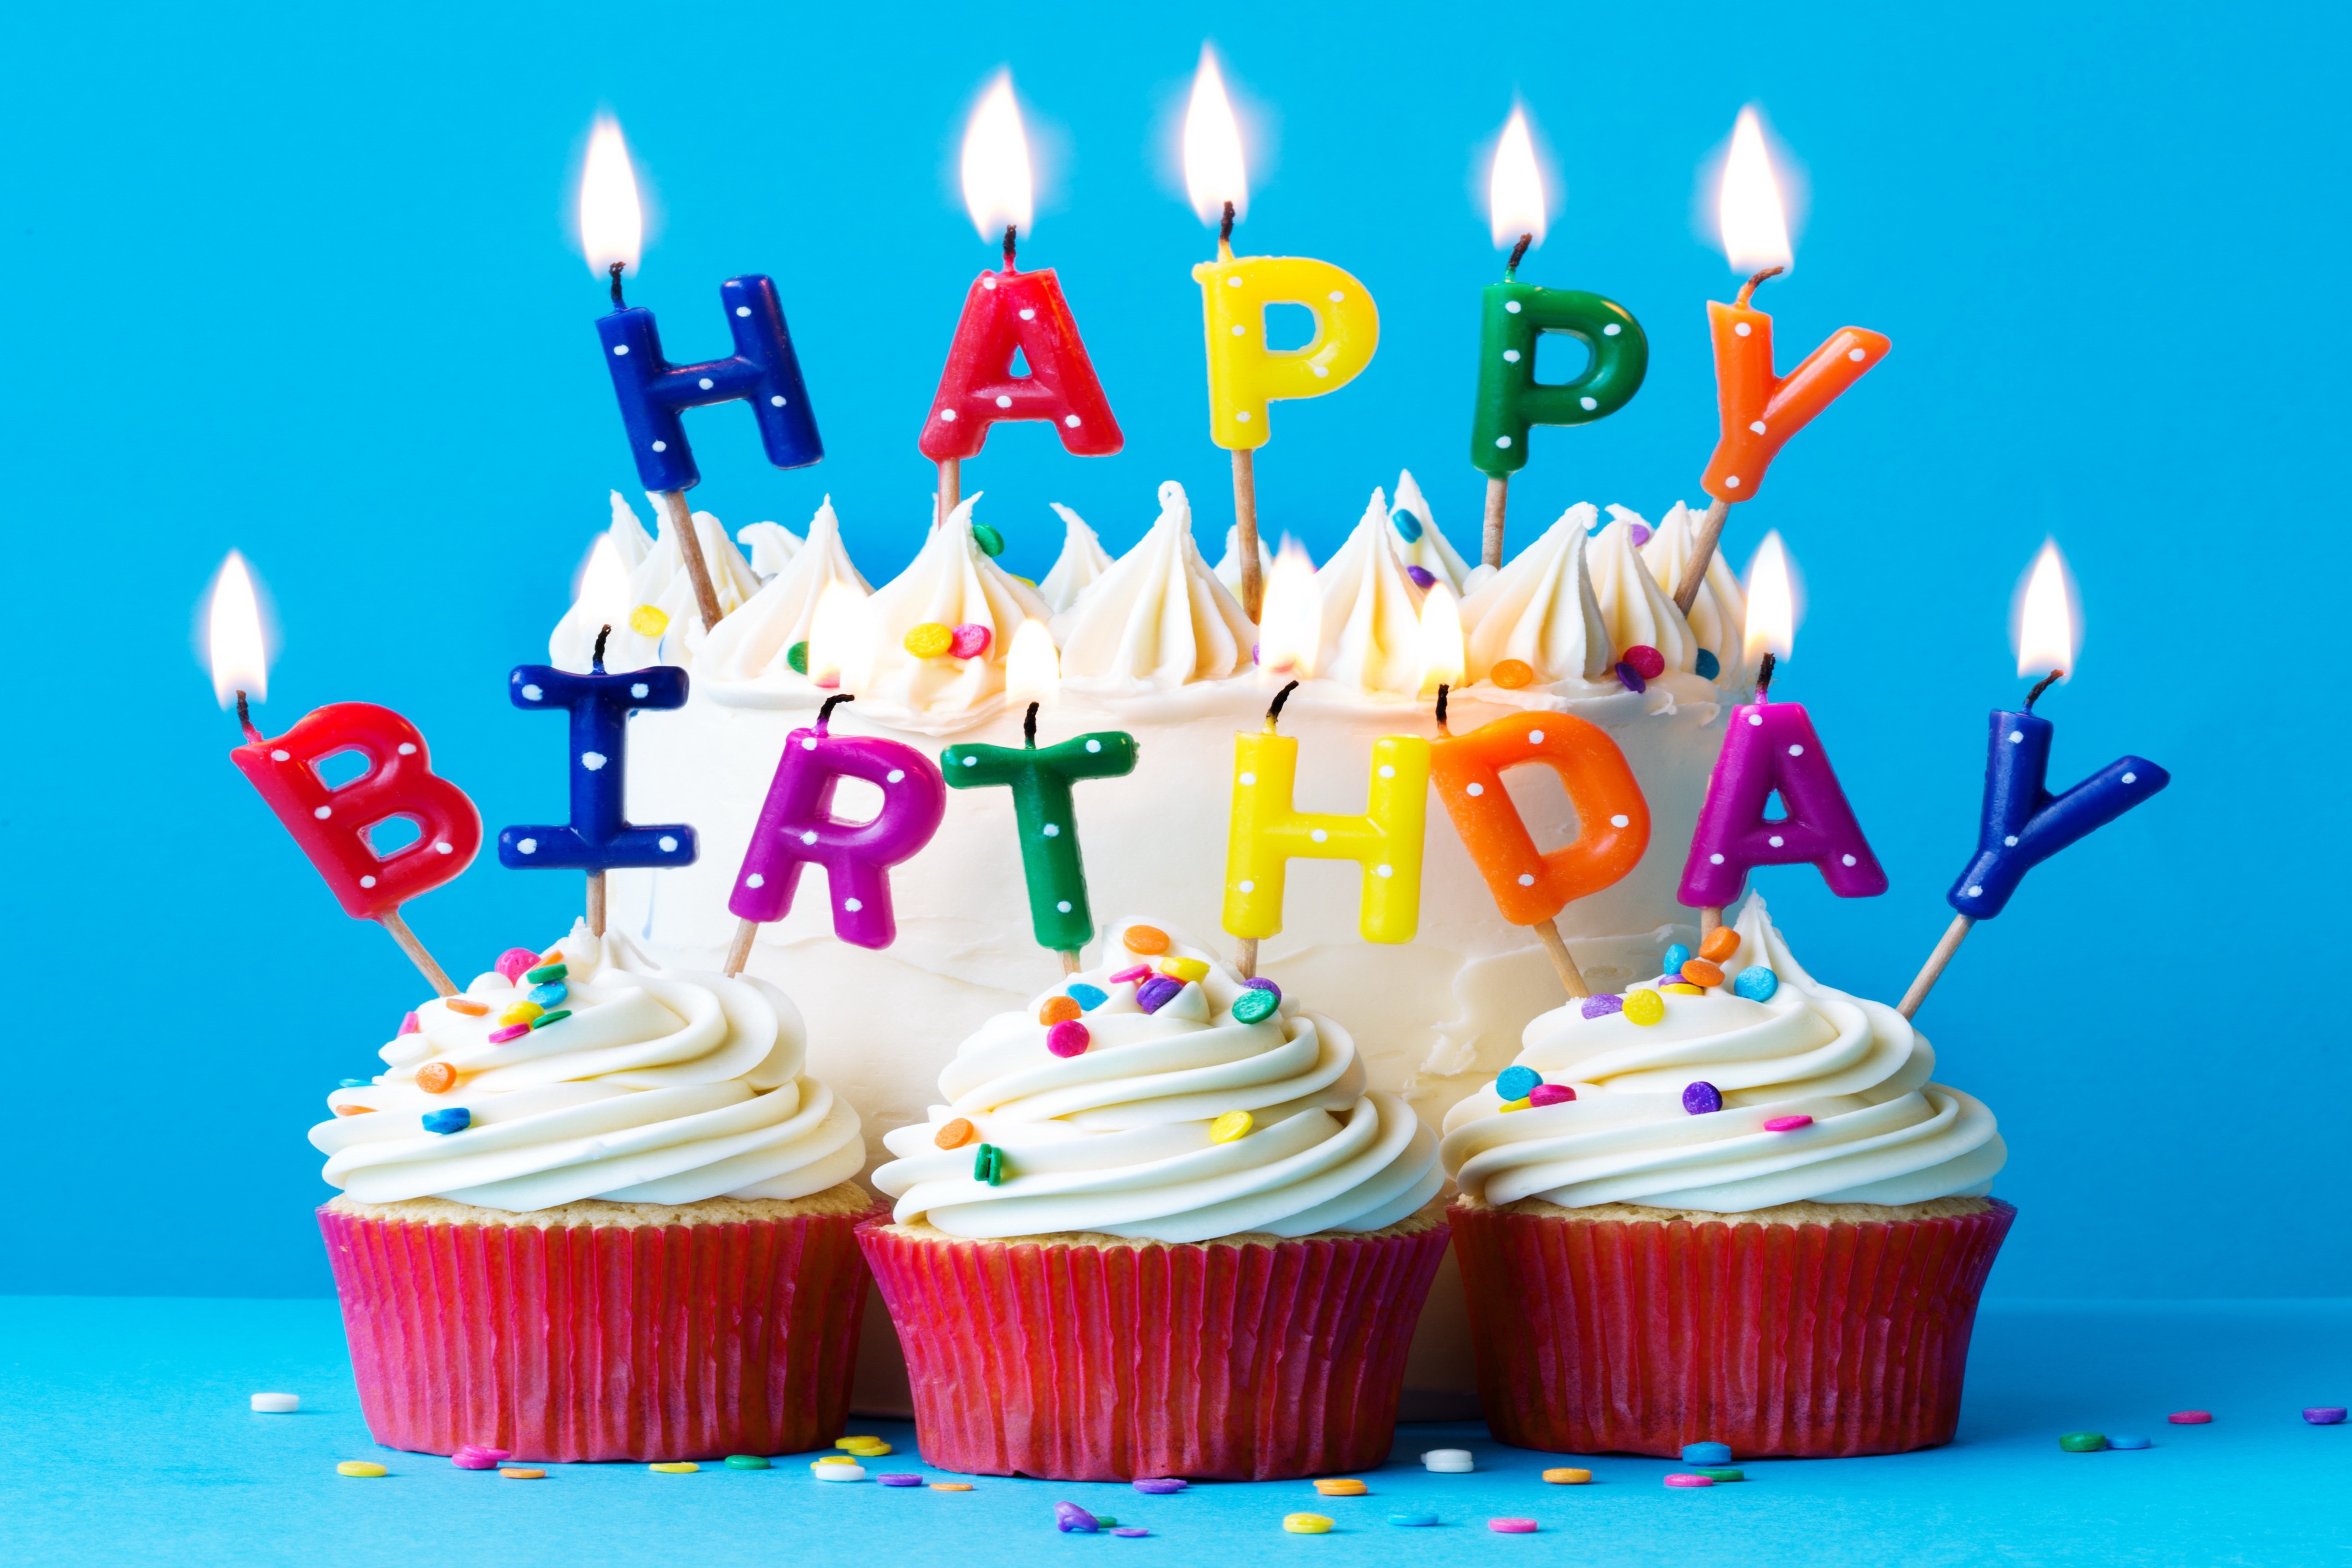 Виде с днем рождения. С днем рождения. С дн[м рождения. Торт с днем рождения!. С днём рождения 13 лет мальчику.